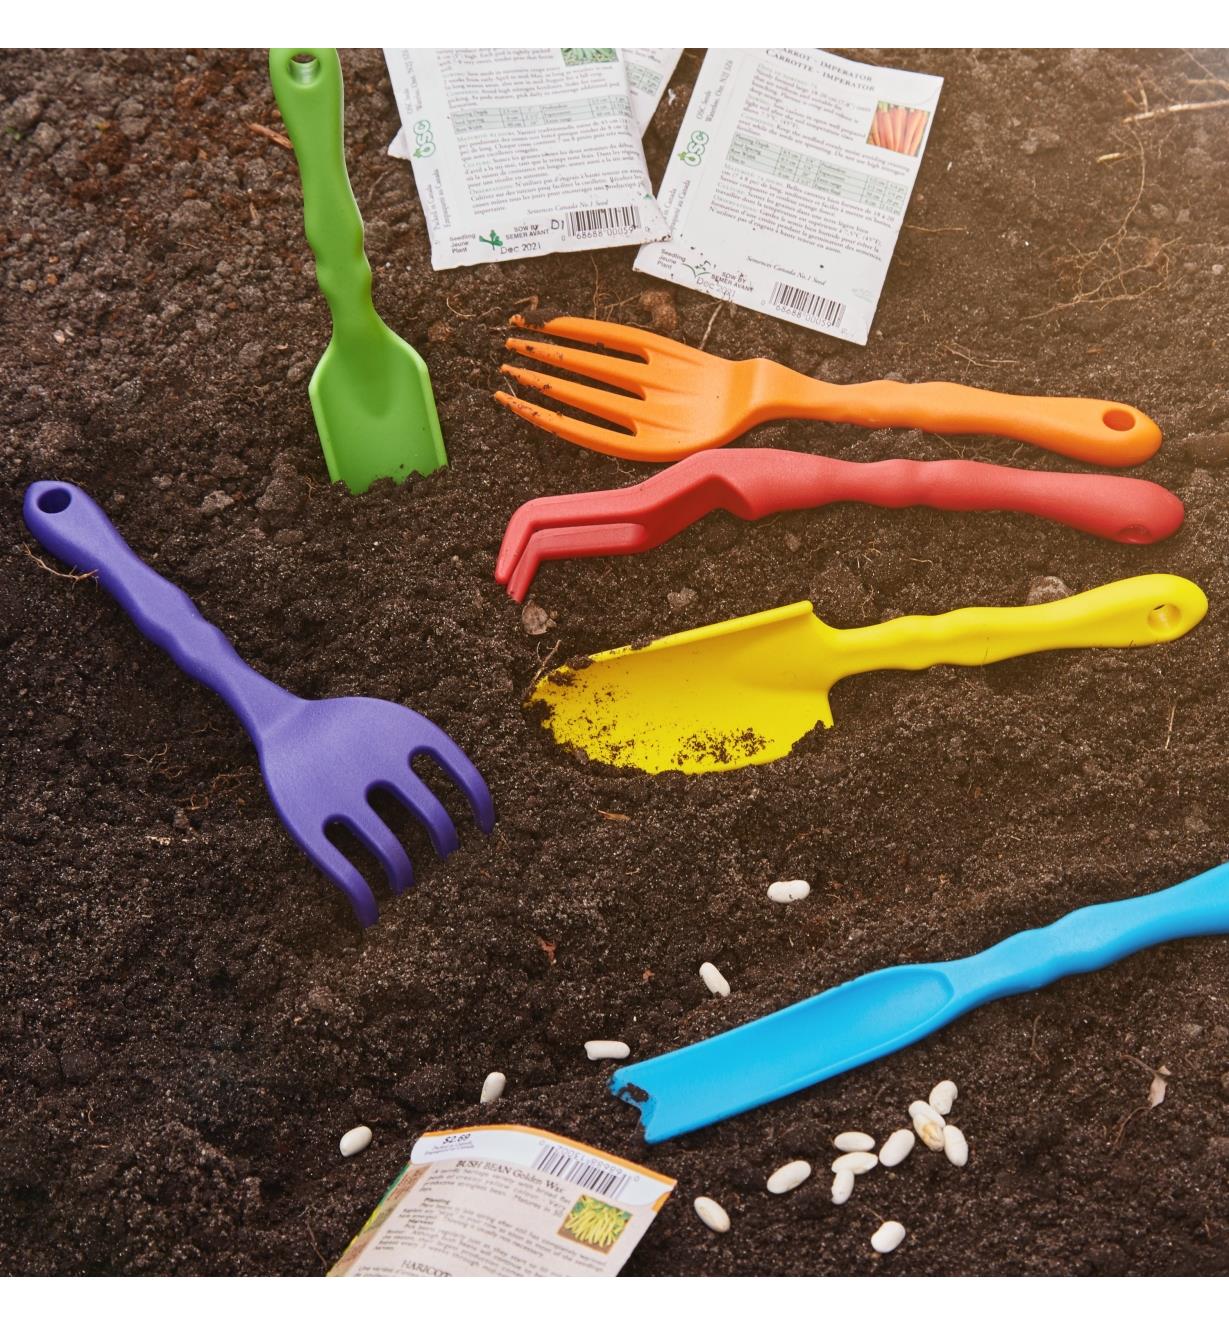 Six outils de jardinage pour enfants dans une plate-bande près de graines prêtes à planter